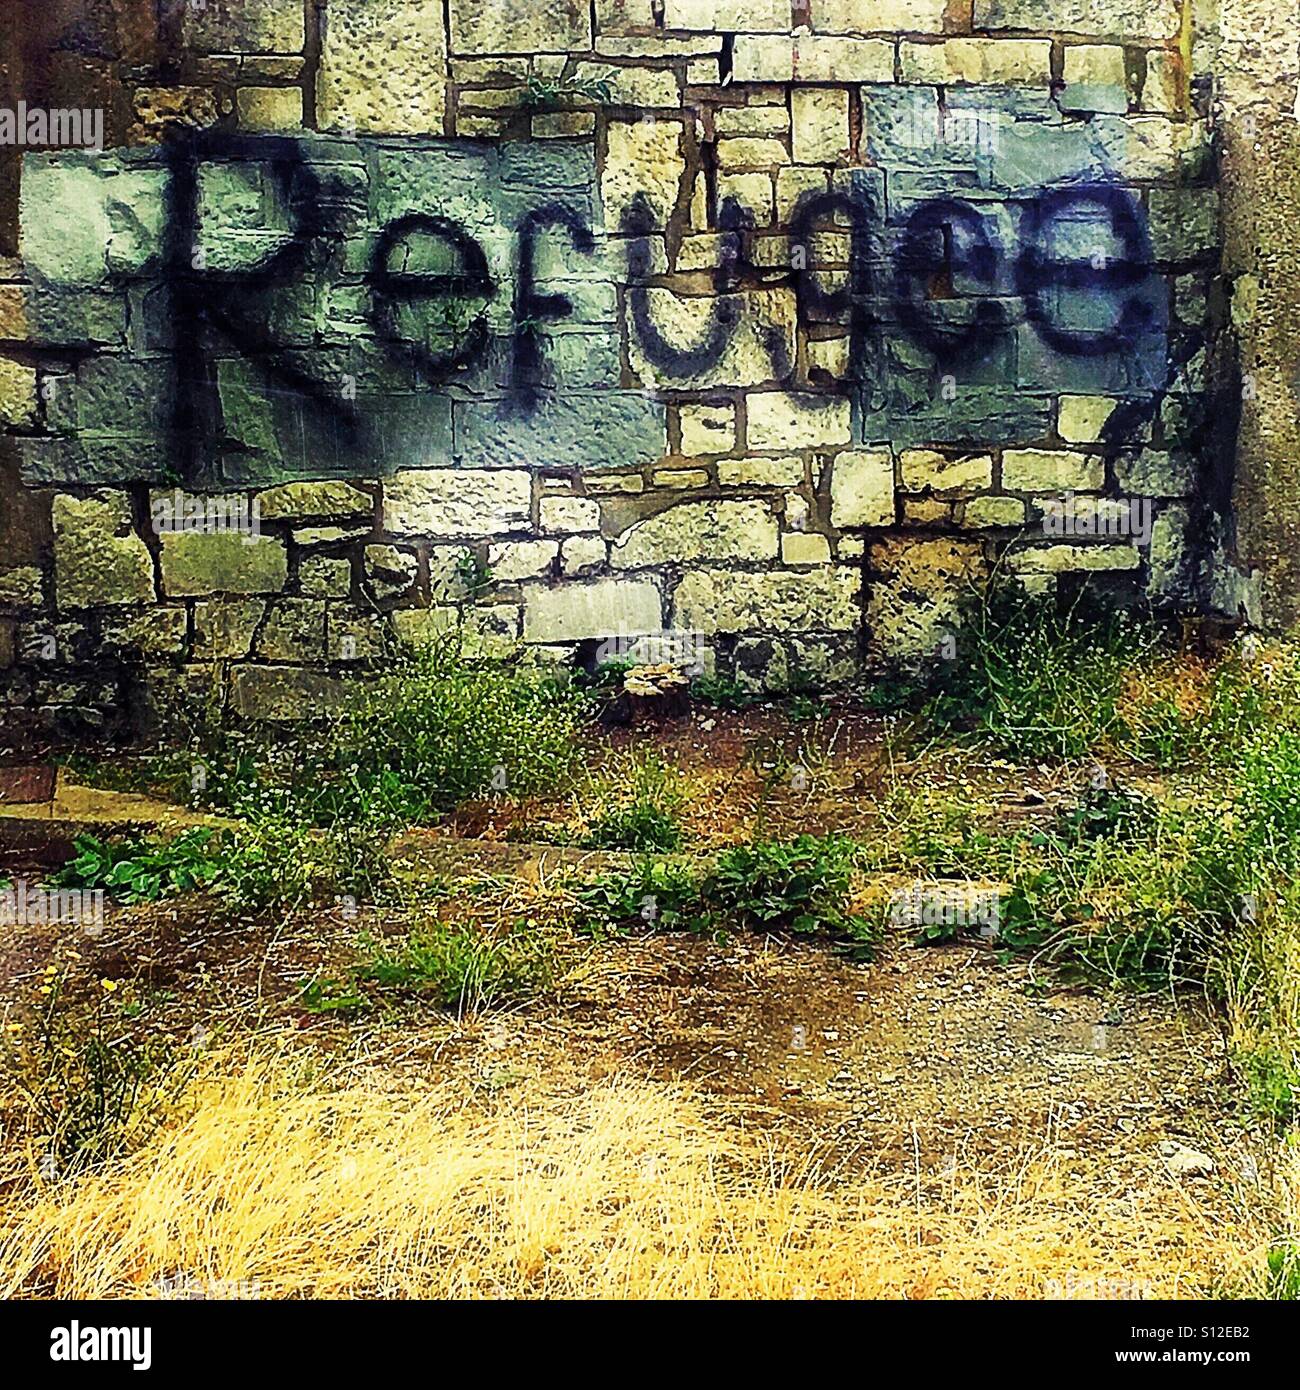 Refugee graffiti on wall Stock Photo